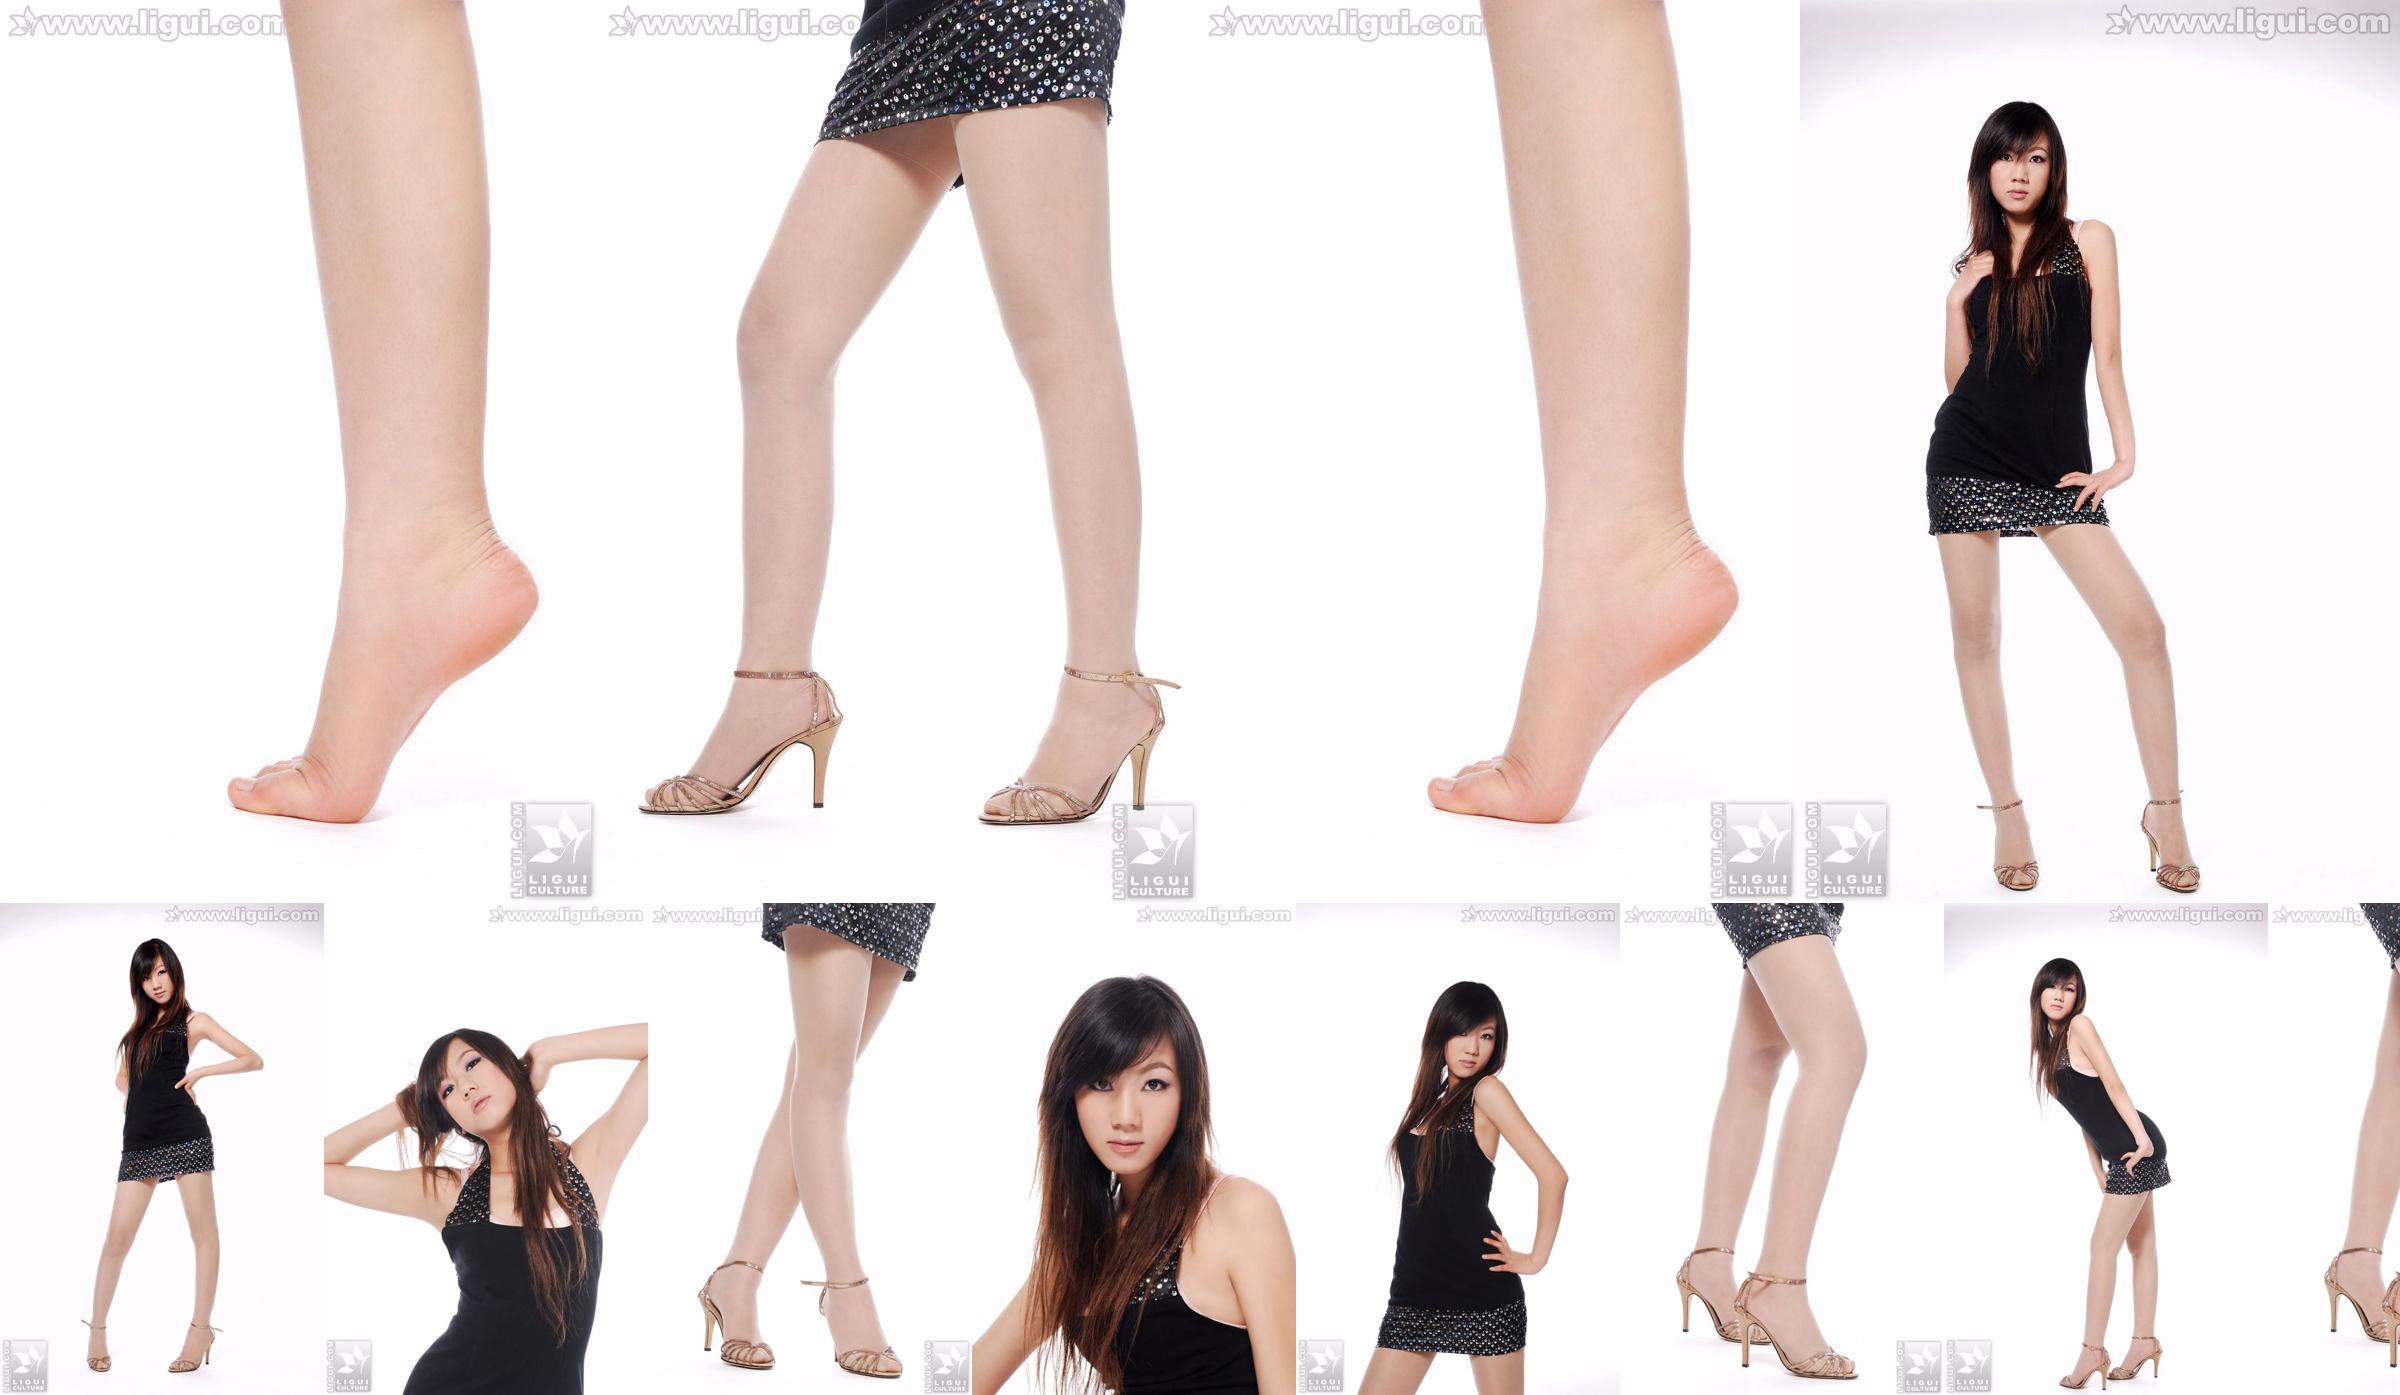 Modelo Sheng Chao "lindo novo show de pé de jade de salto alto" [Sheng LiGui] Foto de belas pernas e pé de jade No.896e84 Página 1